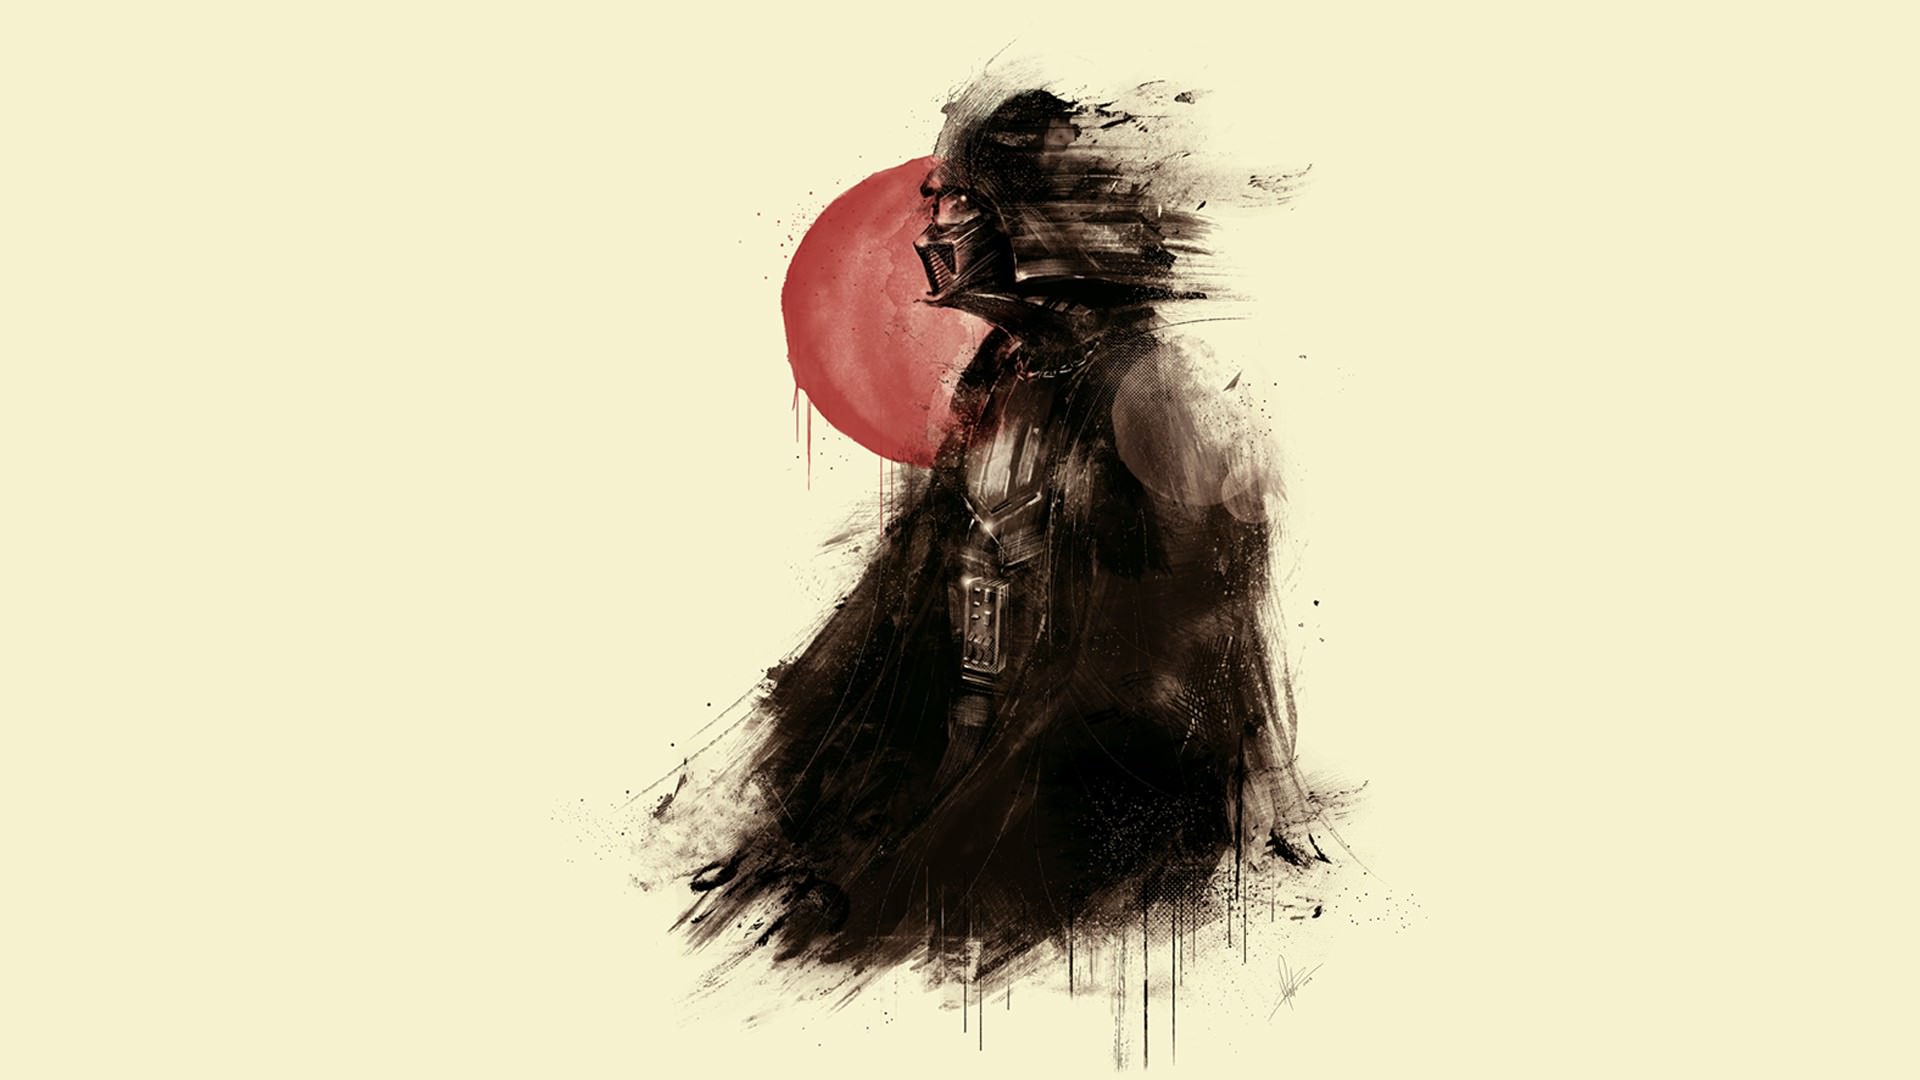 Darth Vader Digital Art Wallpapers